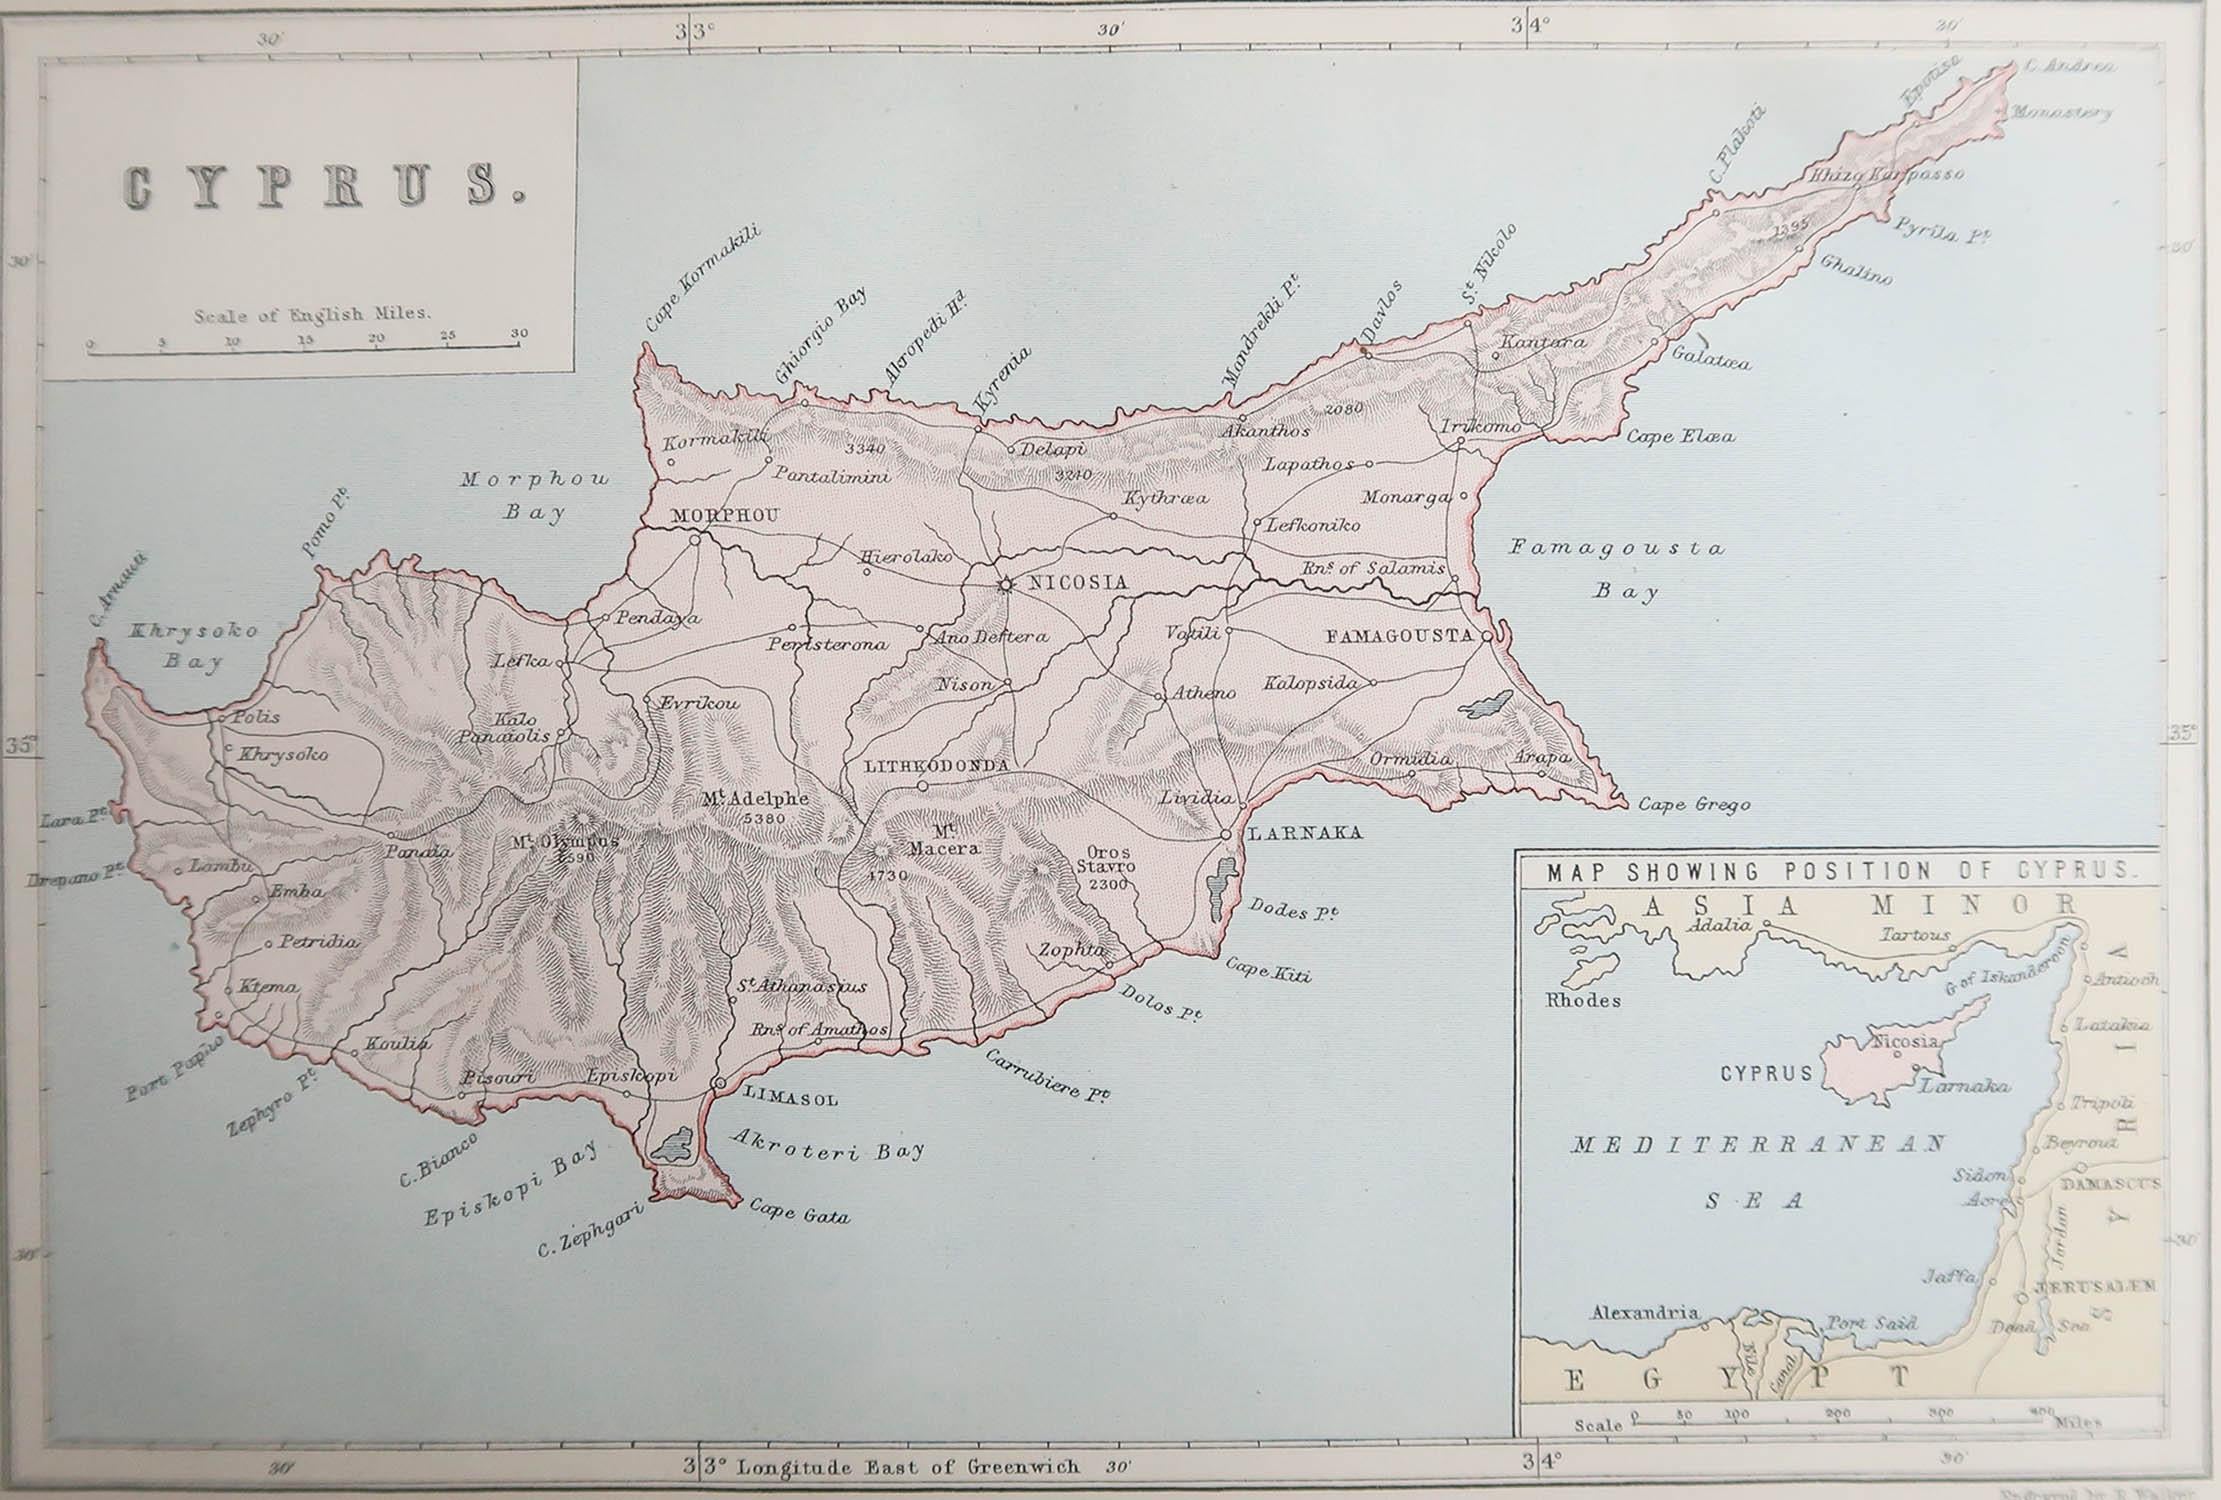 Tolle Karte von Zypern

Gezeichnet und gestochen von R. Walker

Veröffentlicht von W. Mackenzie, London

Original Farbe

Ungerahmt.








